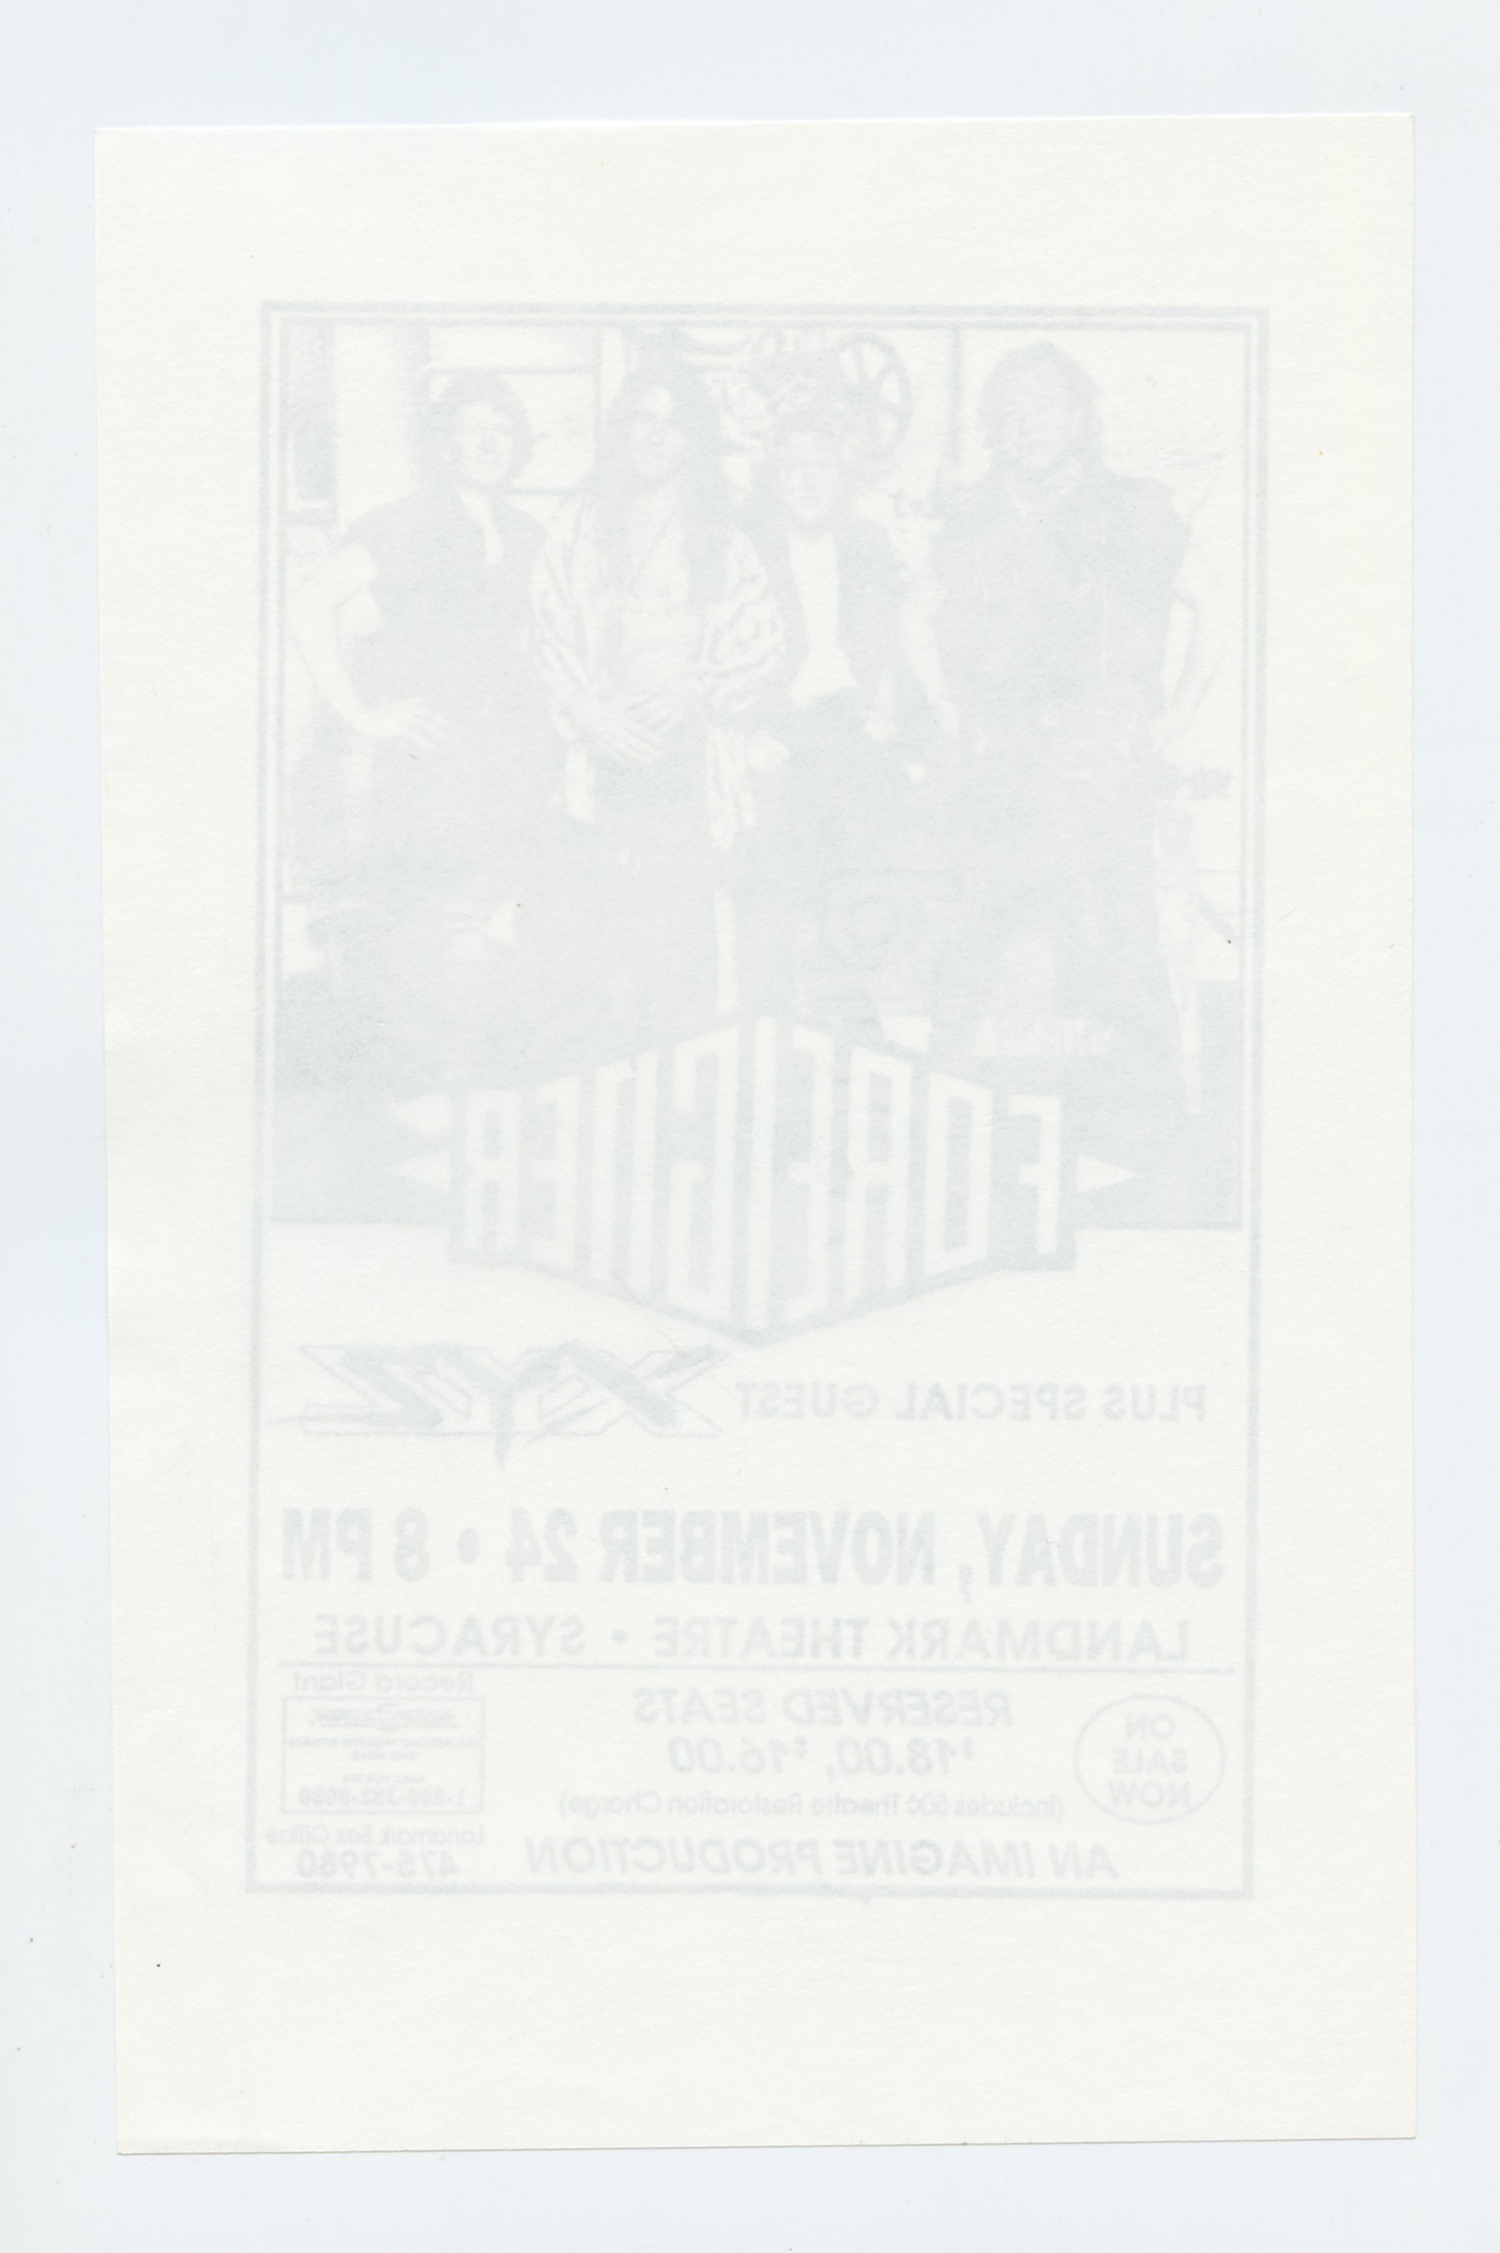 Foreigner Handbill 1991 Nov 24 Landmark Theatre Syracuse